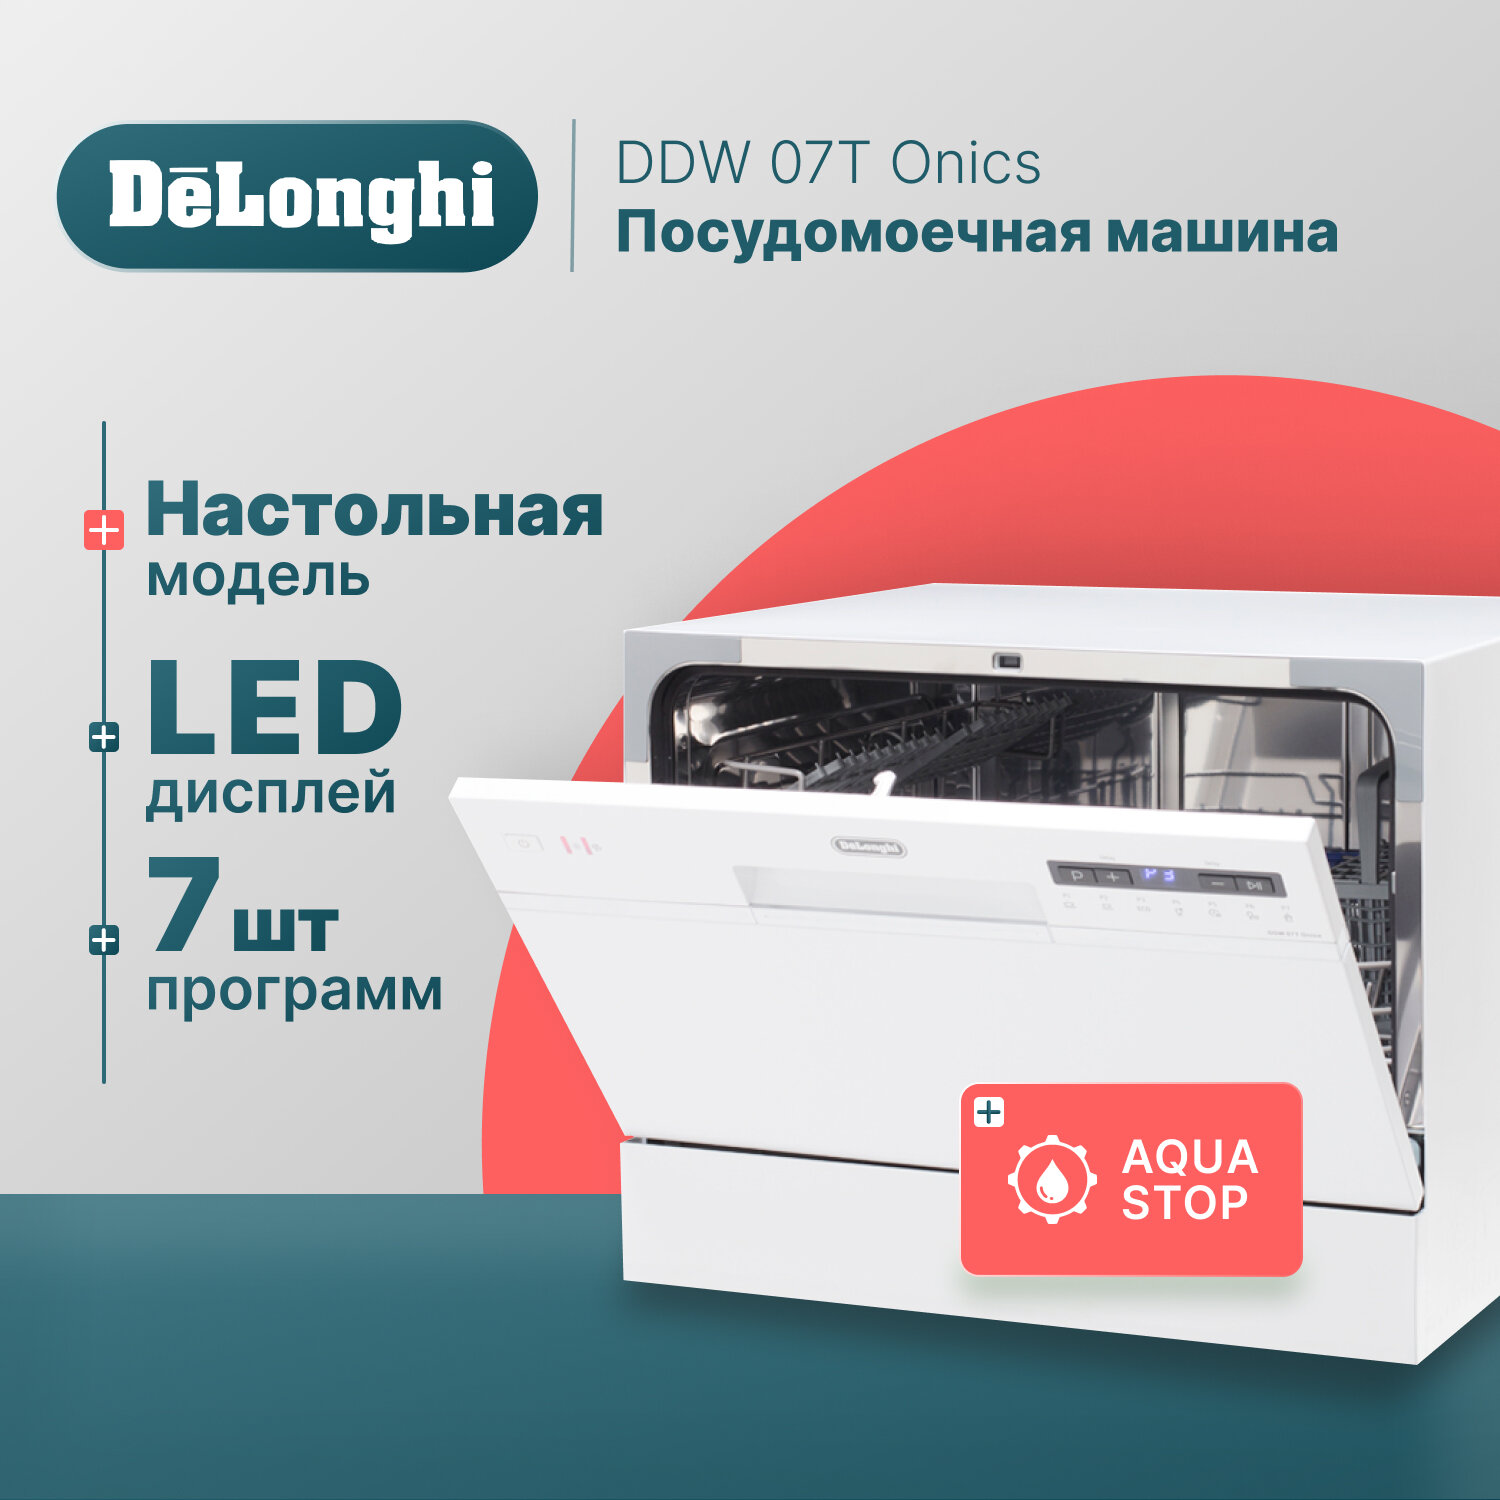 Компактная посудомоечная машина DeLonghi DDW 07T Onics, 6 комплектов, Aqua Stop, 7 программ.